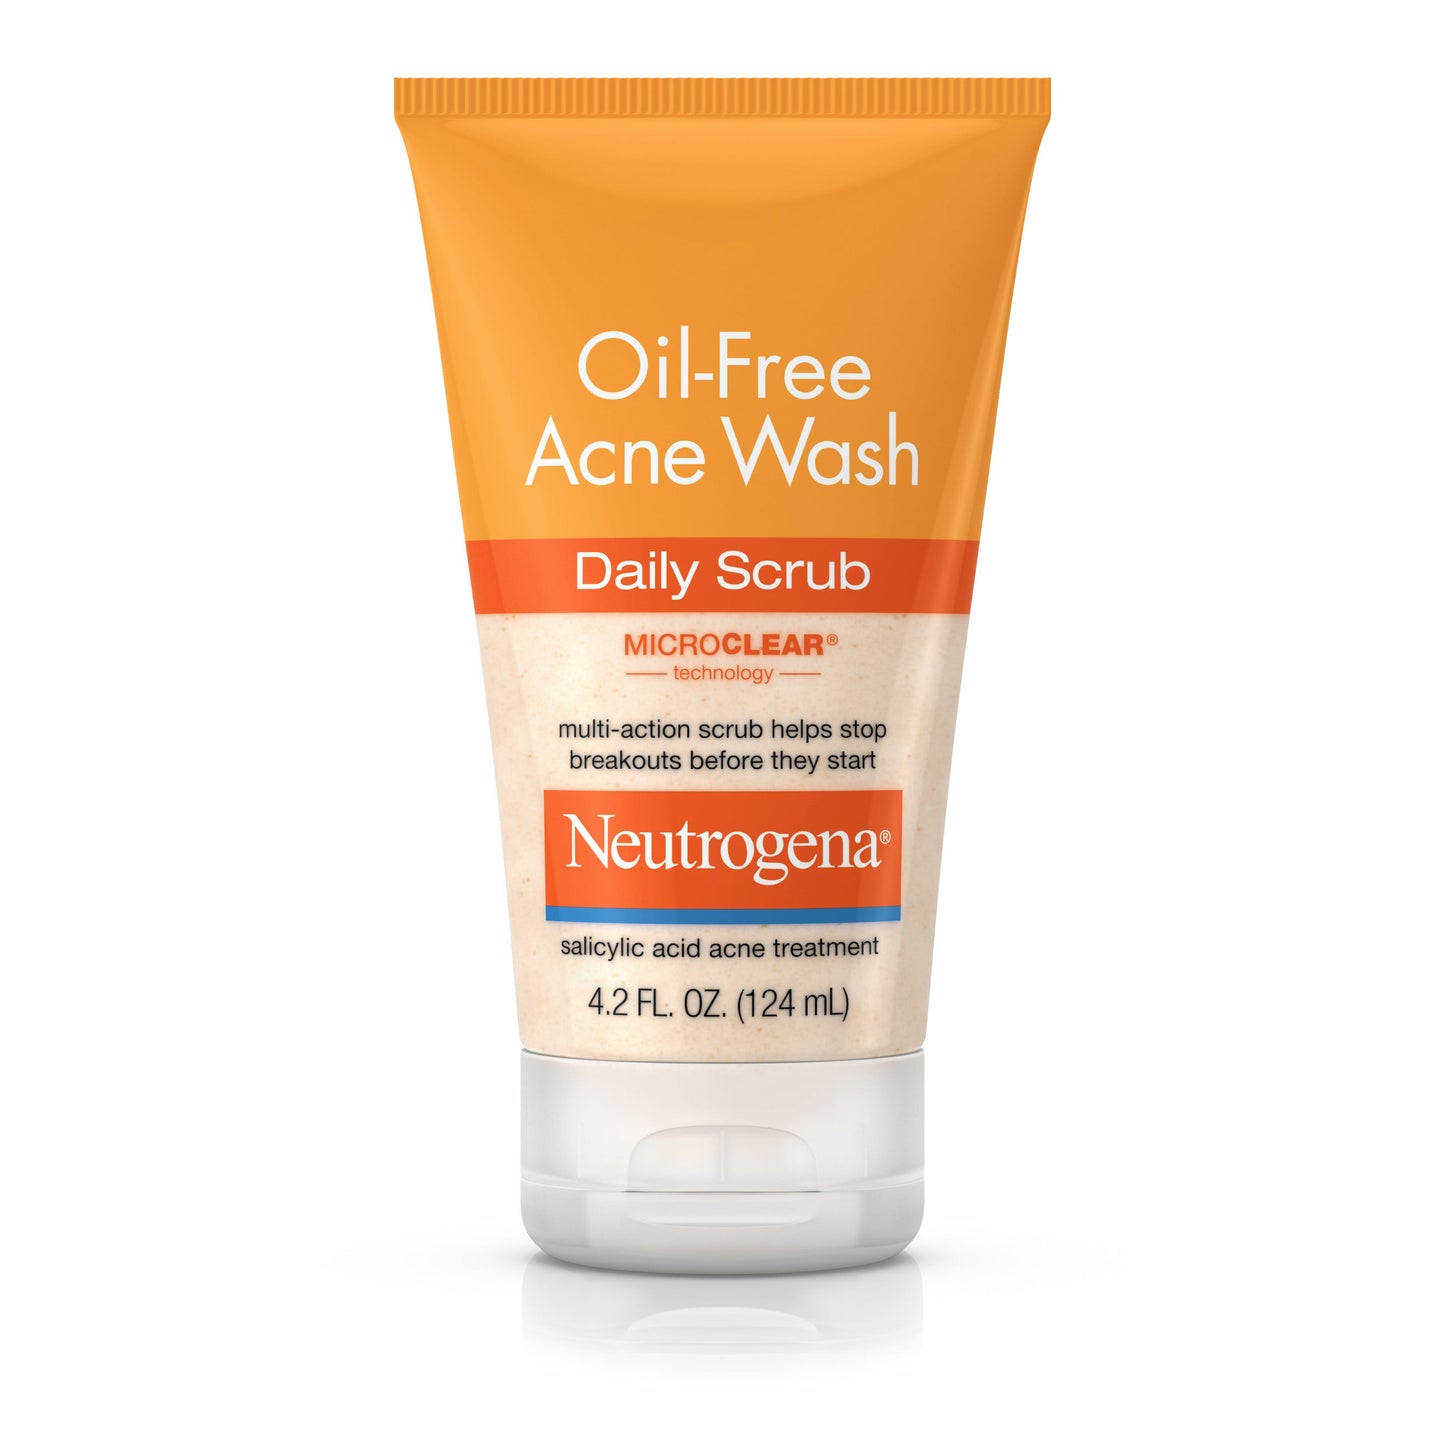 Oil-Free Acne Wash Daily Scrub